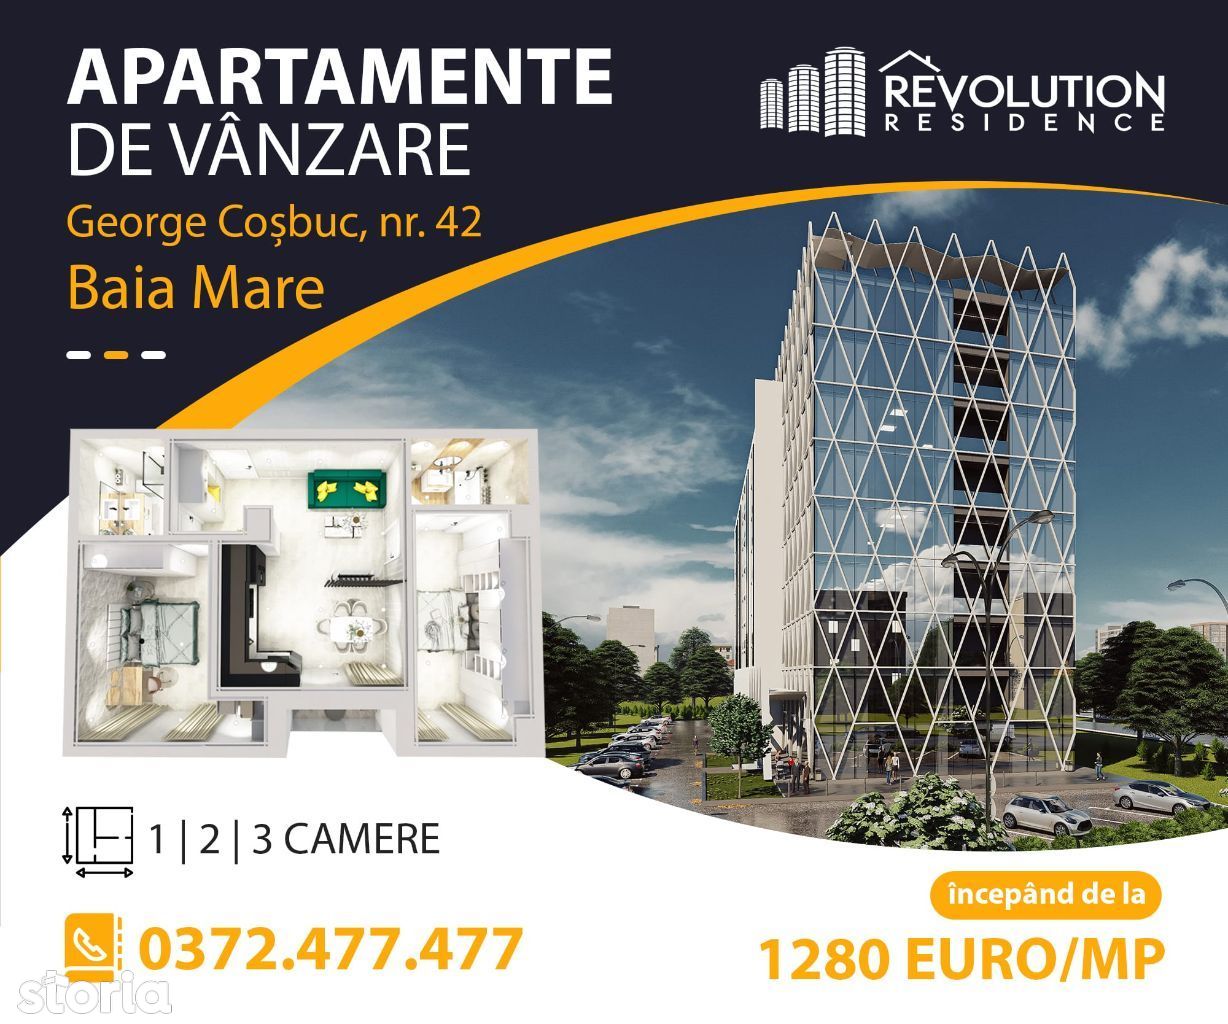 NEW! COMISION 0% - Apartament 3 camere - George Cosbuc 42, Baia Mare